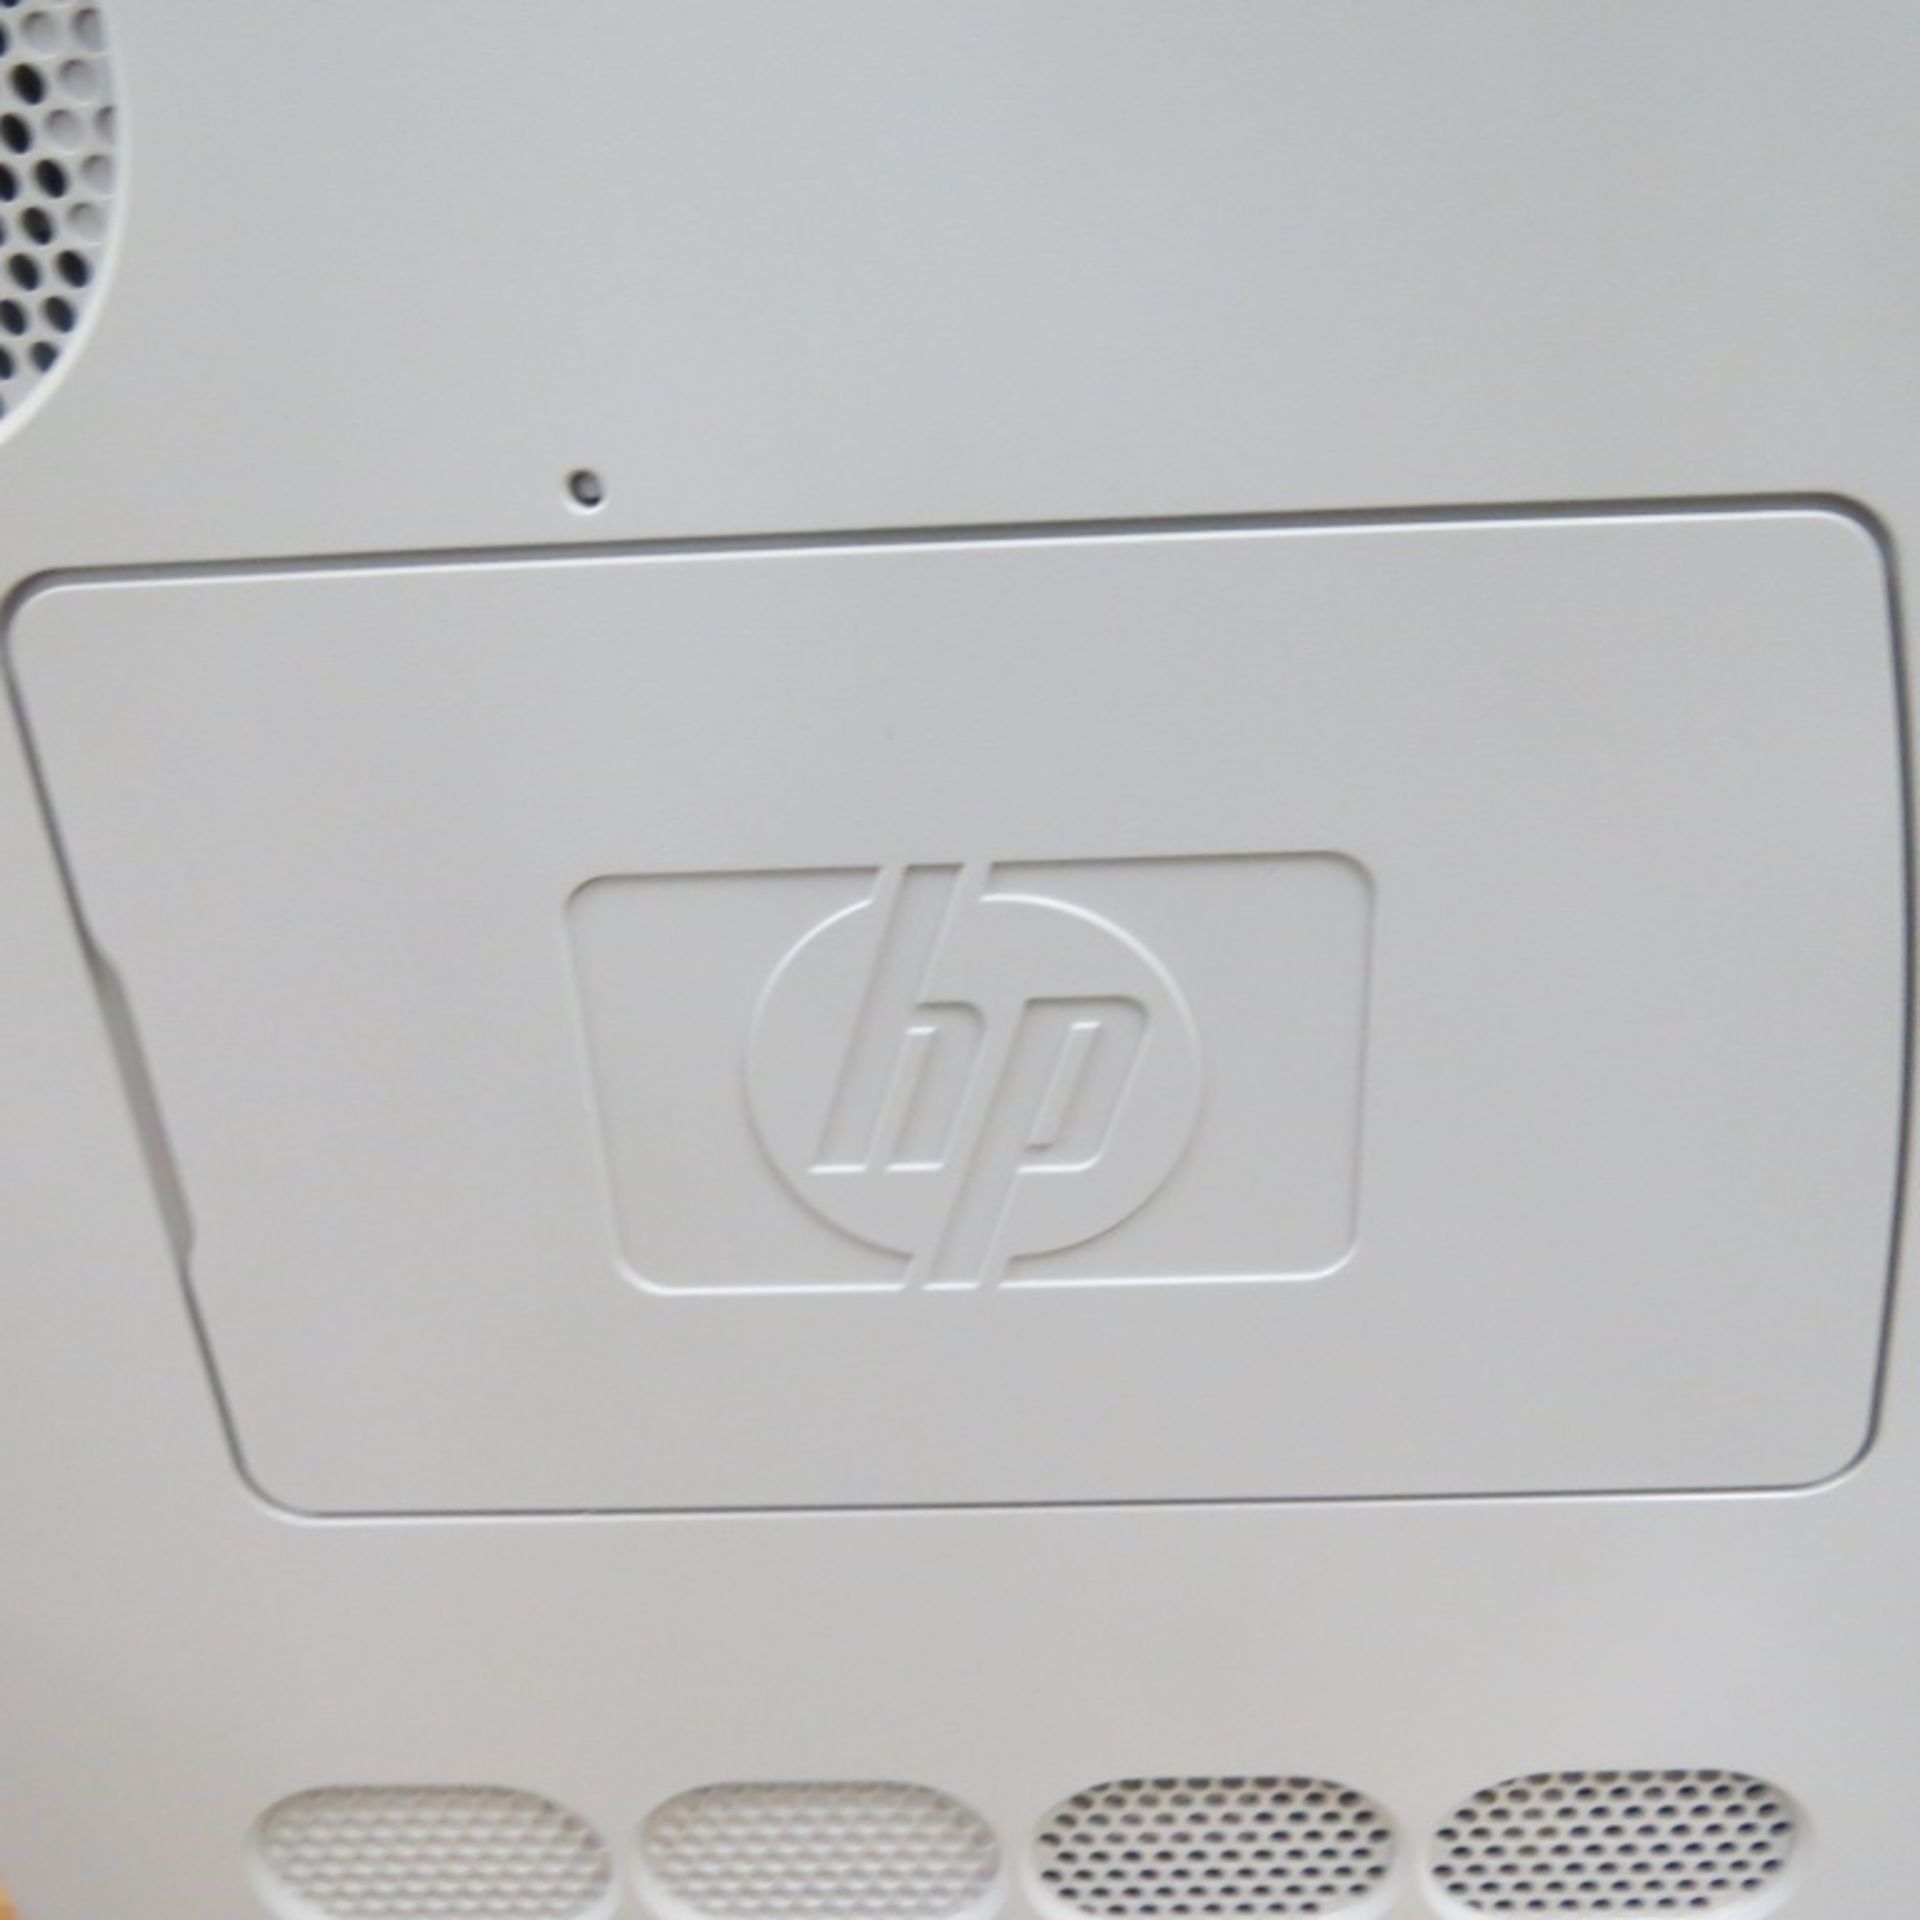 HP Color Laserjet 3700n - Image 3 of 6